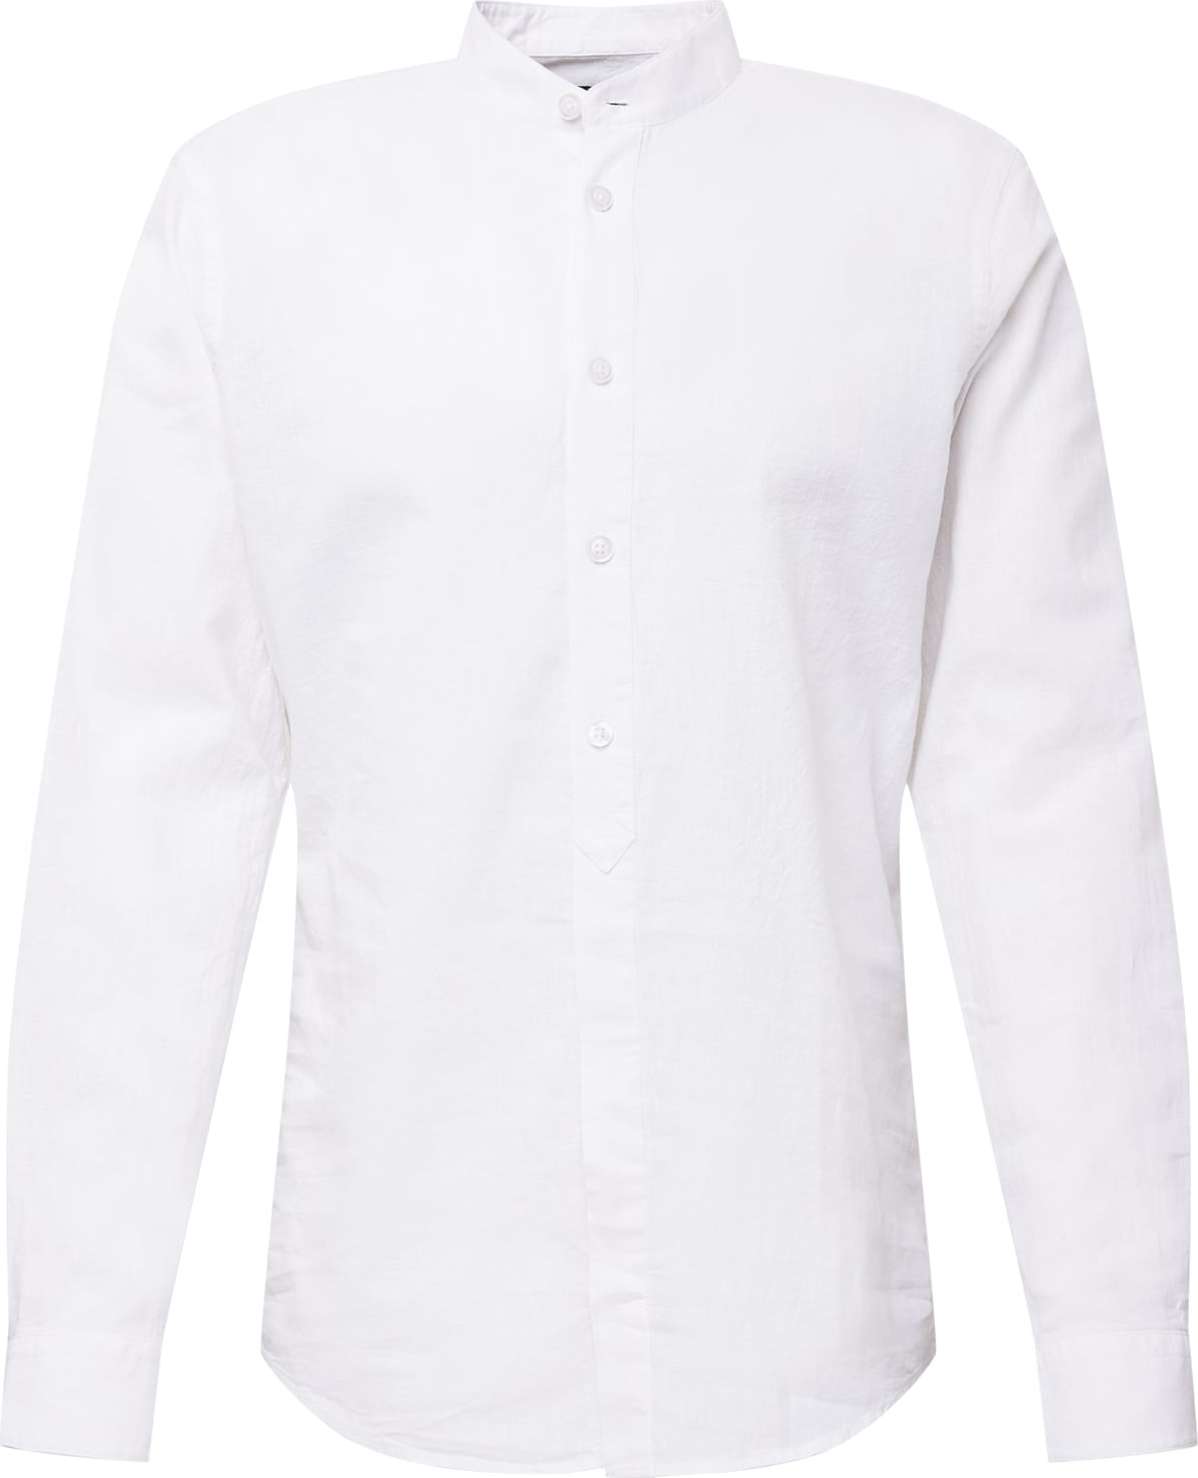 STRELLSON Košile bílá